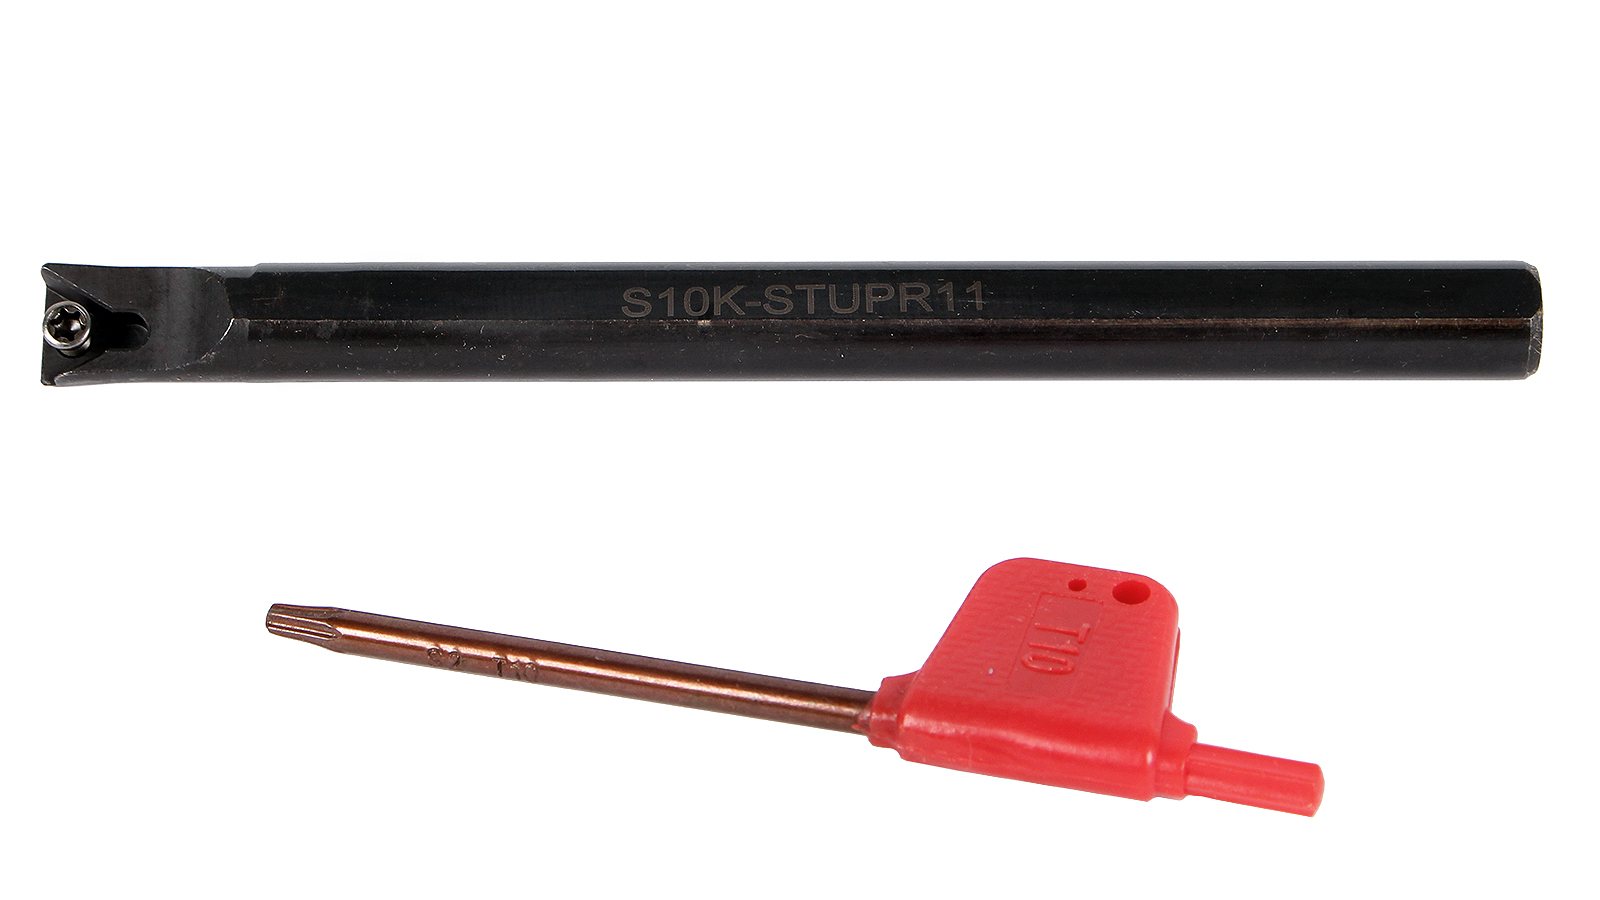 Резец токарный расточной для сквозных и глухих отверстий S10K-STUPR11 резец токарный расточной для сквозных и глухих отверстий s14n stfcr11